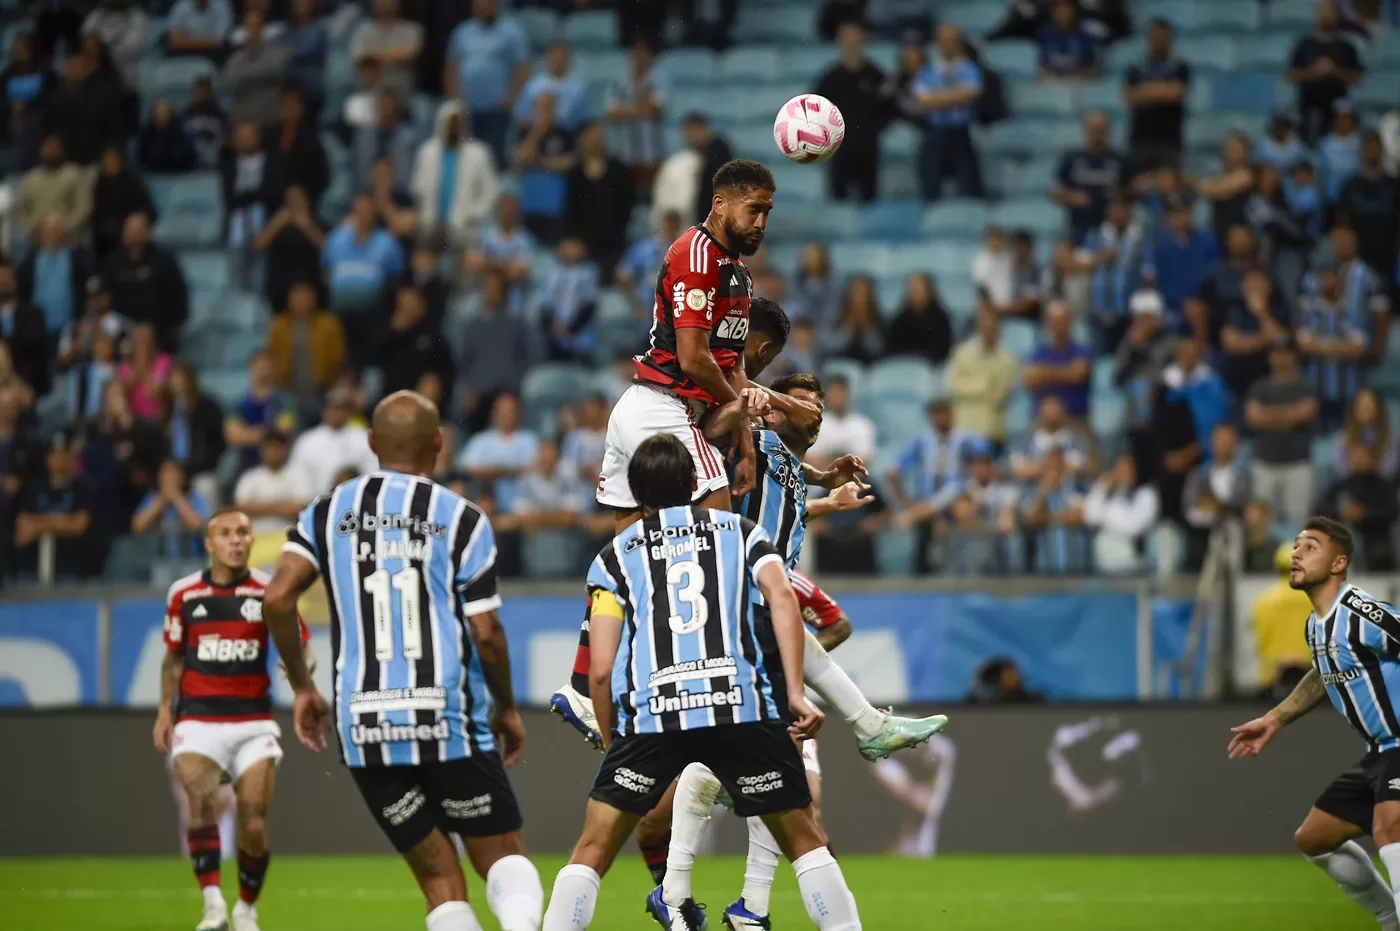 Grêmio empata em 1 a 1 com o Atlético-MG, na 31ª rodada do Brasileirão